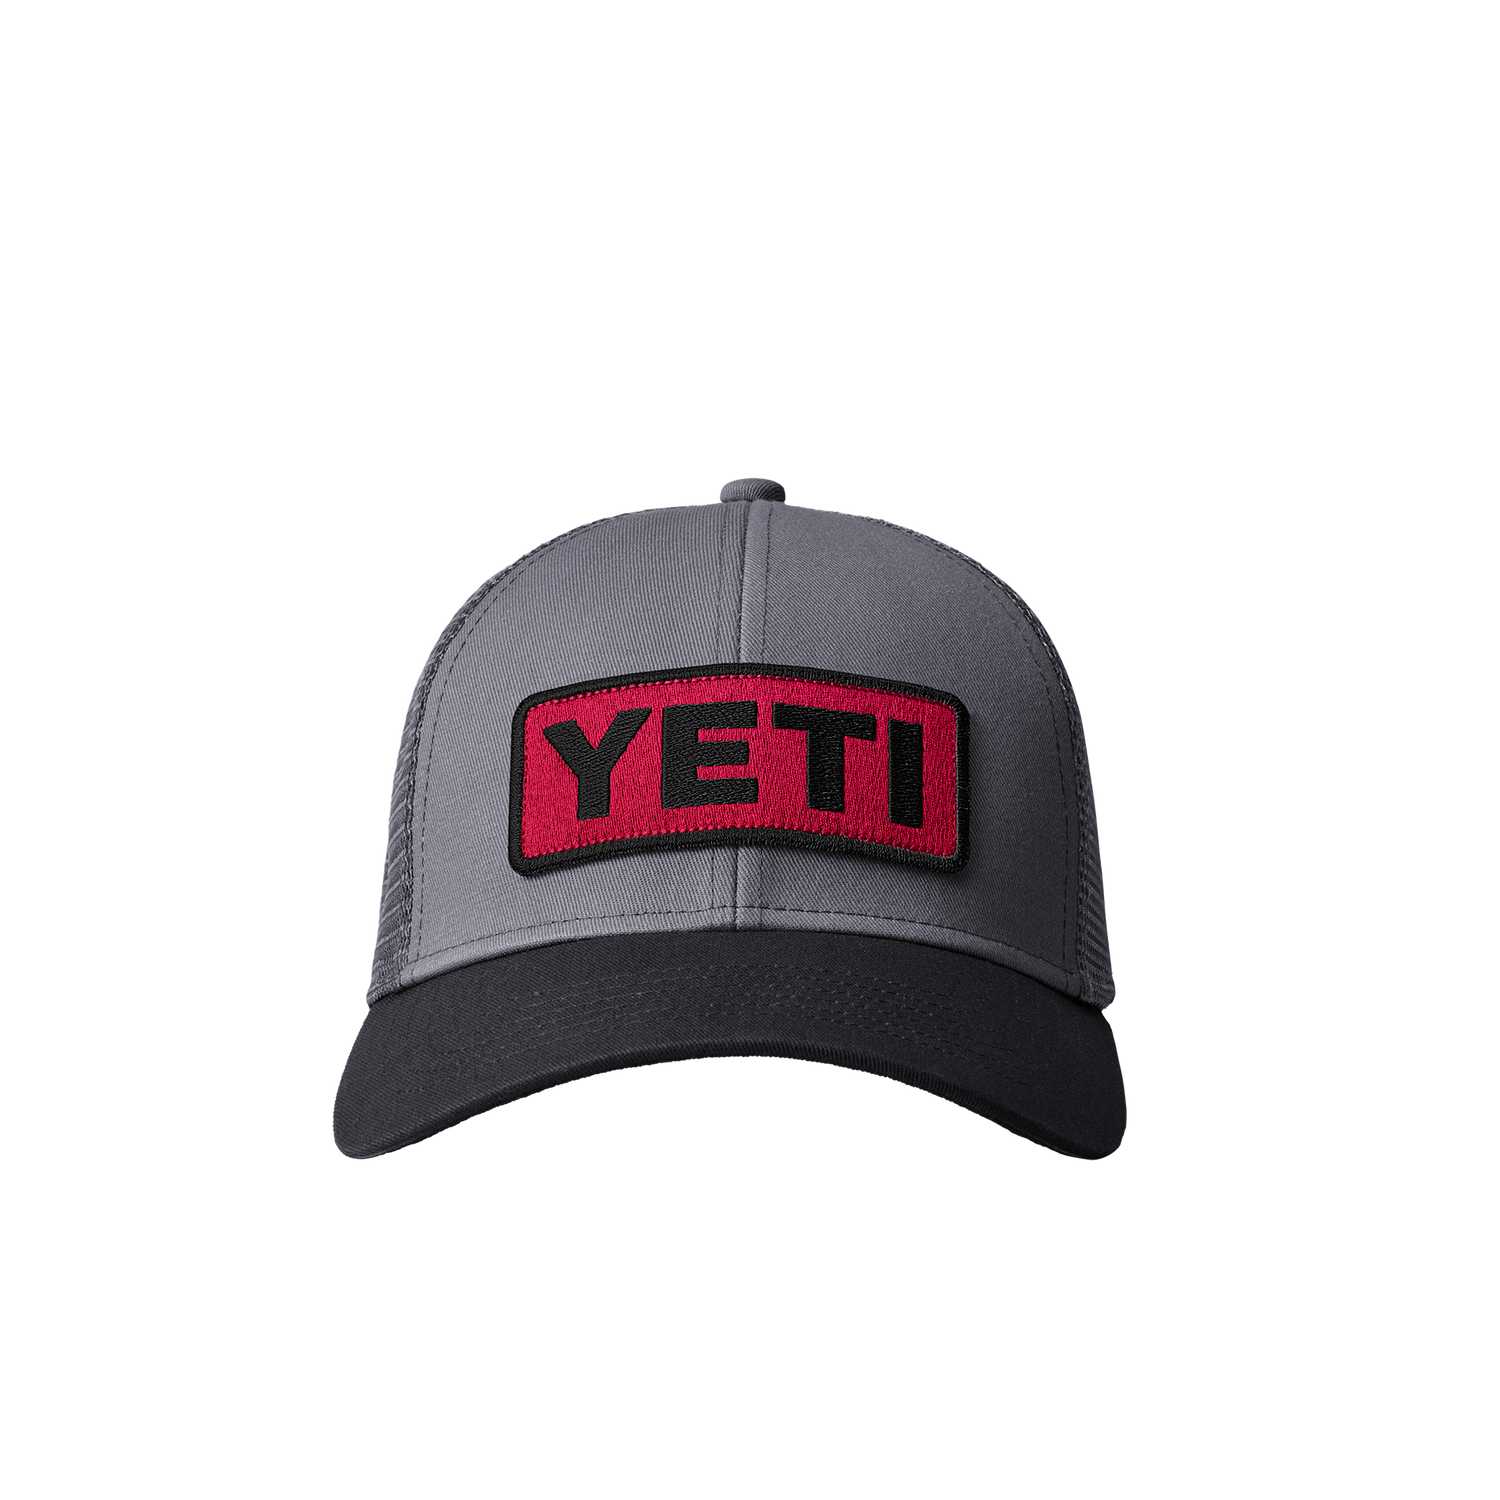 YETI Cappello Trucker con logo a basso profilo Harvest Red/Nero